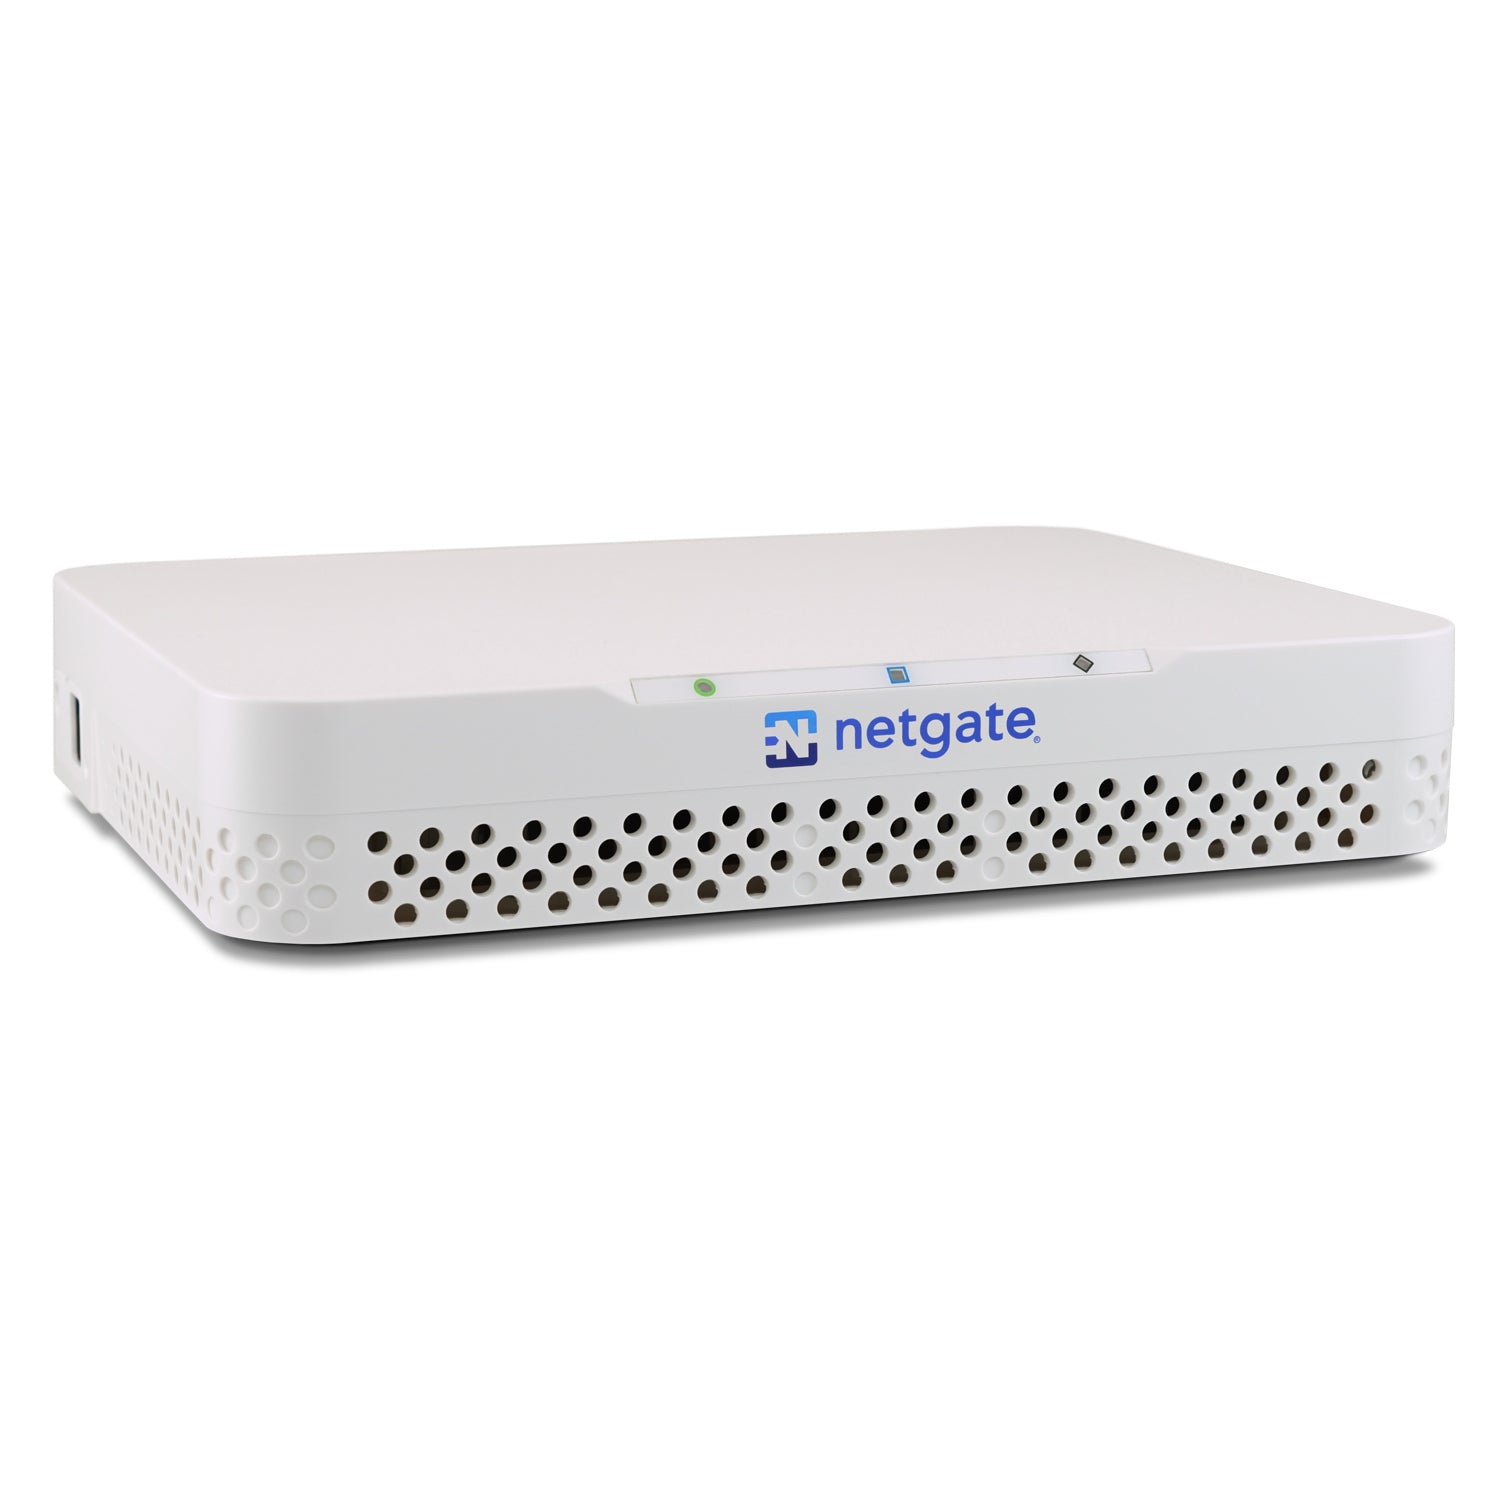 Netgate 6100 pfSense+ Security Gateway